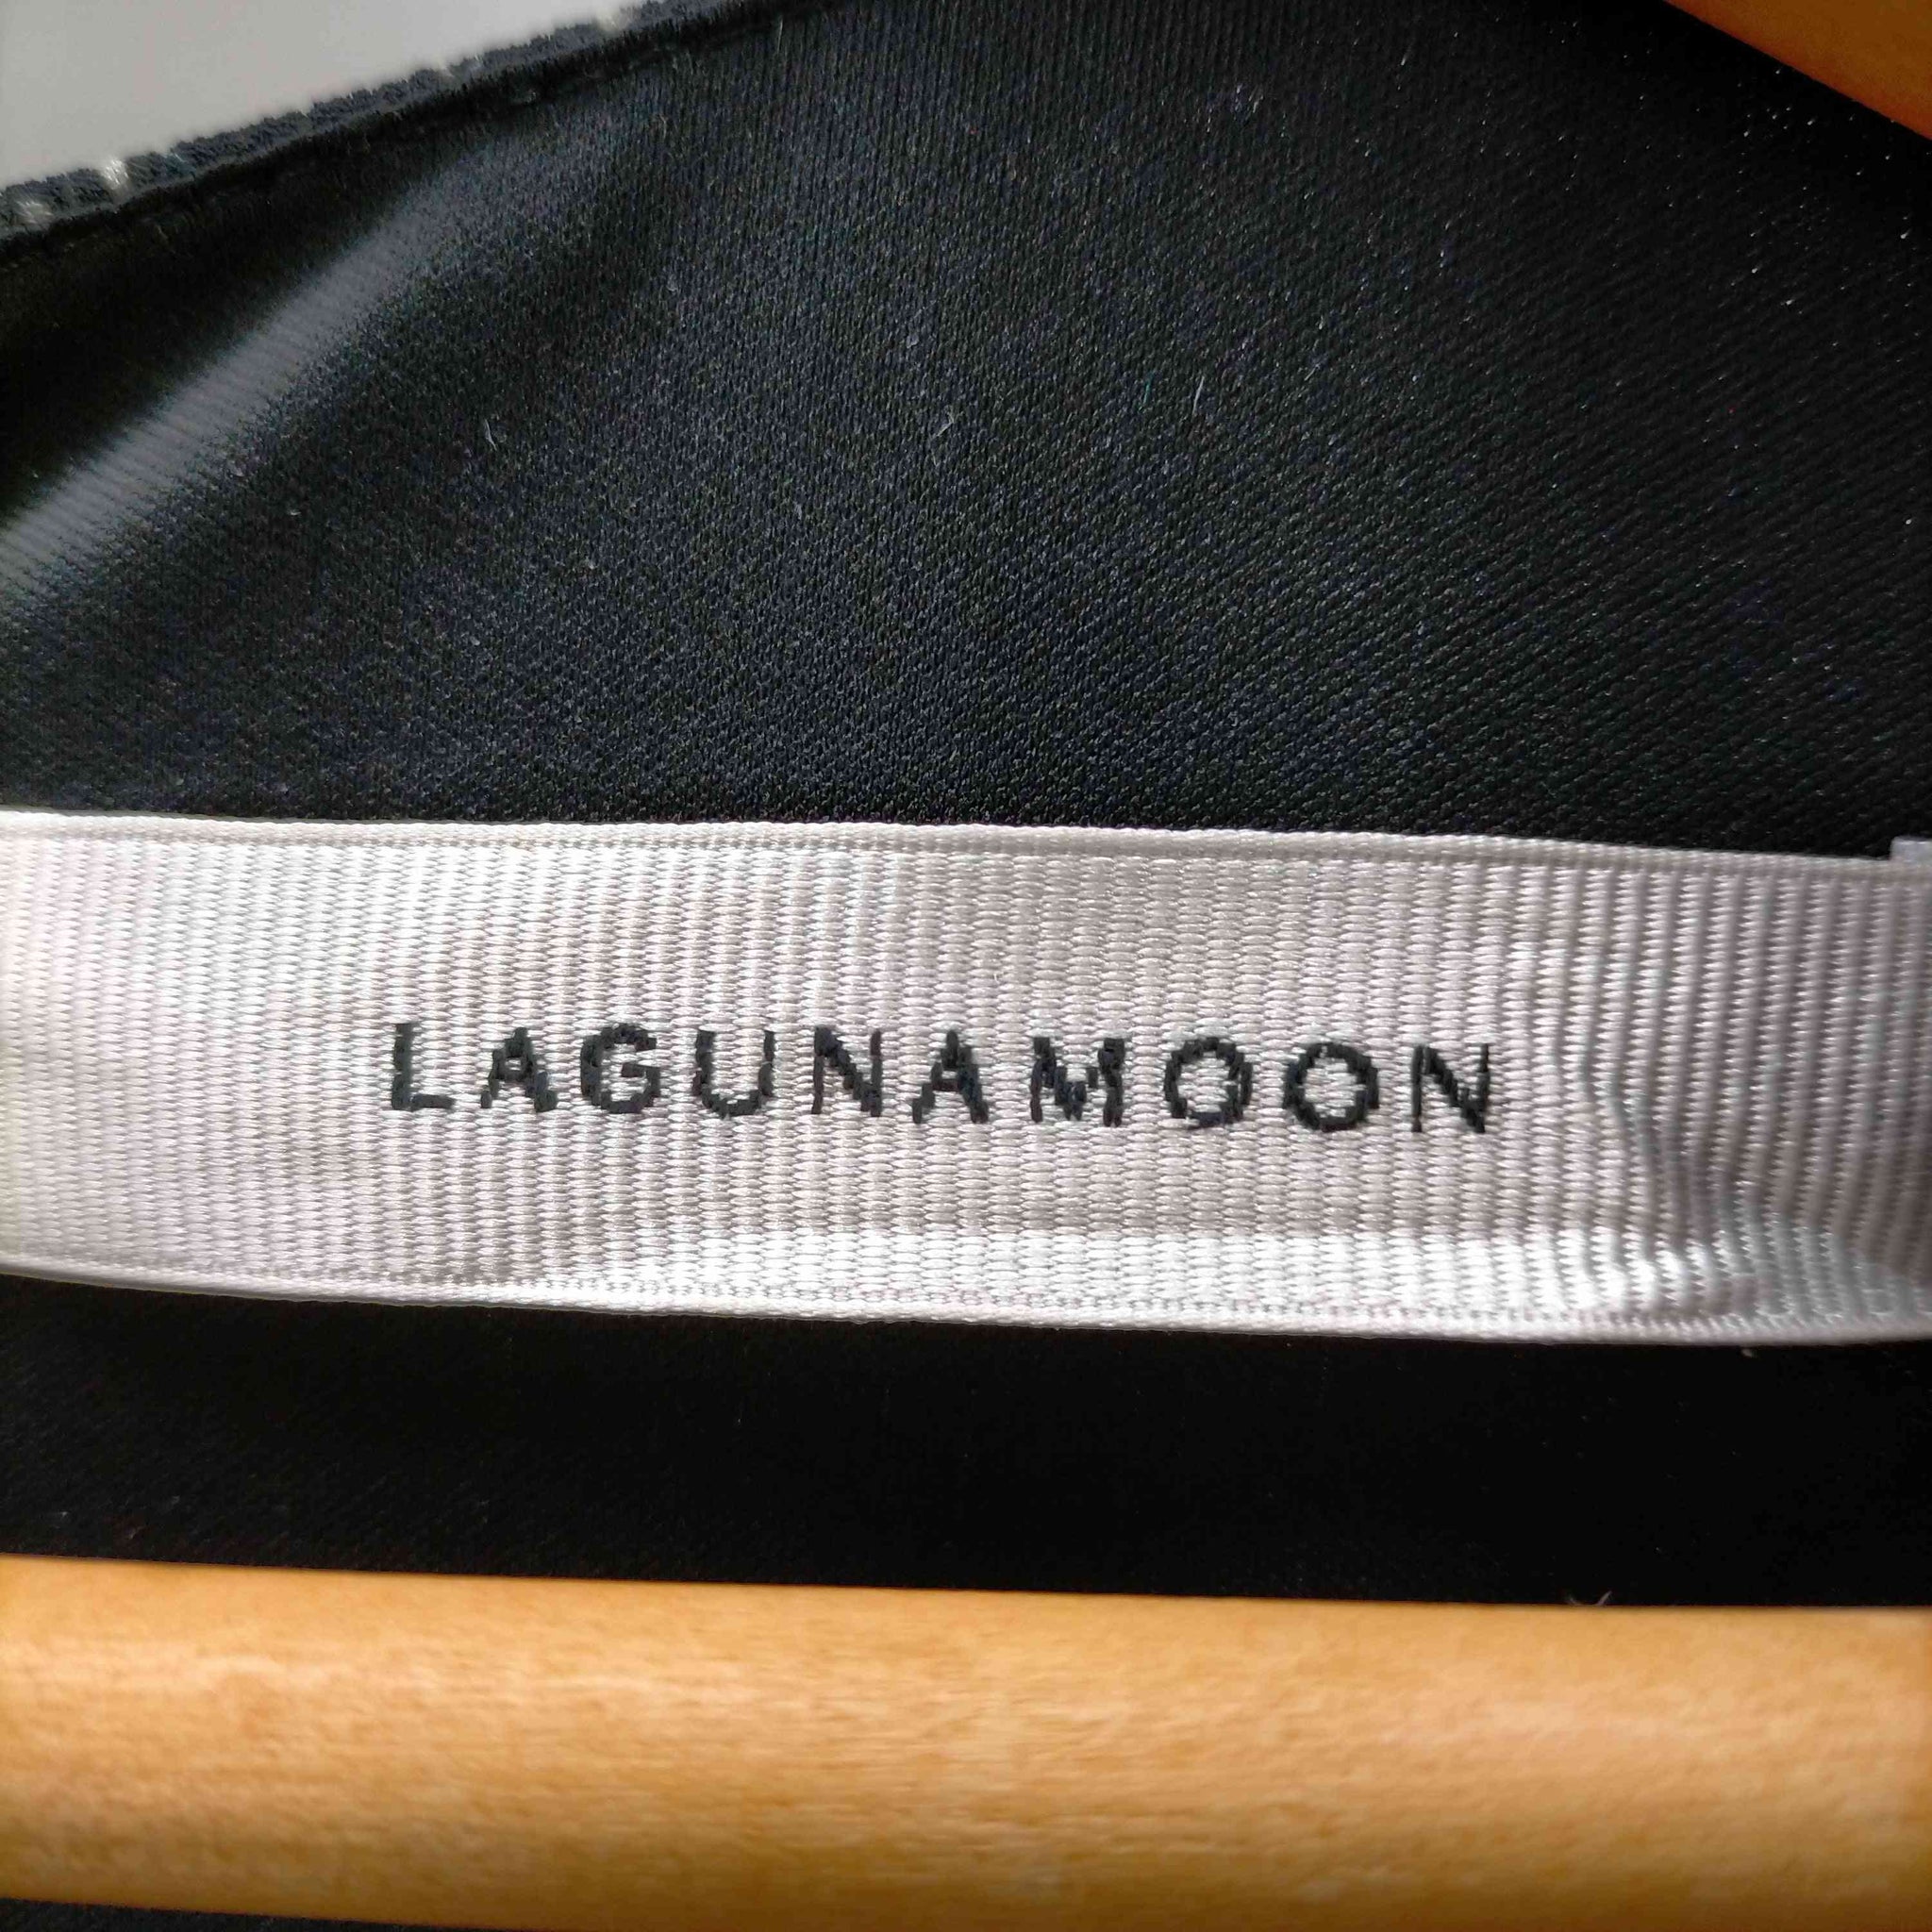 Lagunamoon(ラグナムーン)スリットスリーブアシンメトリーカラーワンピース